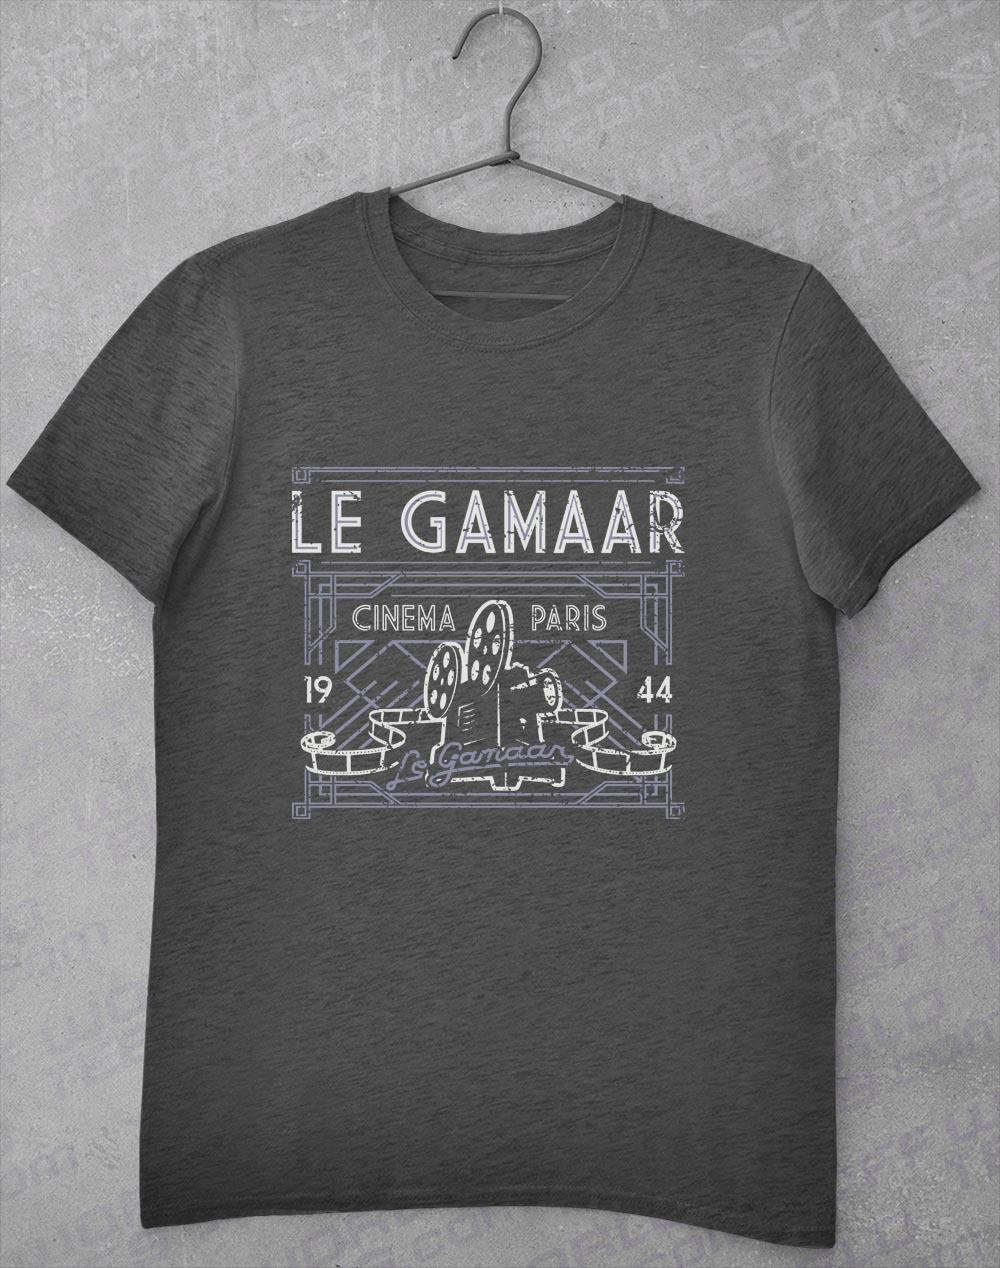 Le Gamaar Cinema T Shirt S / Dark Heather  - Off World Tees